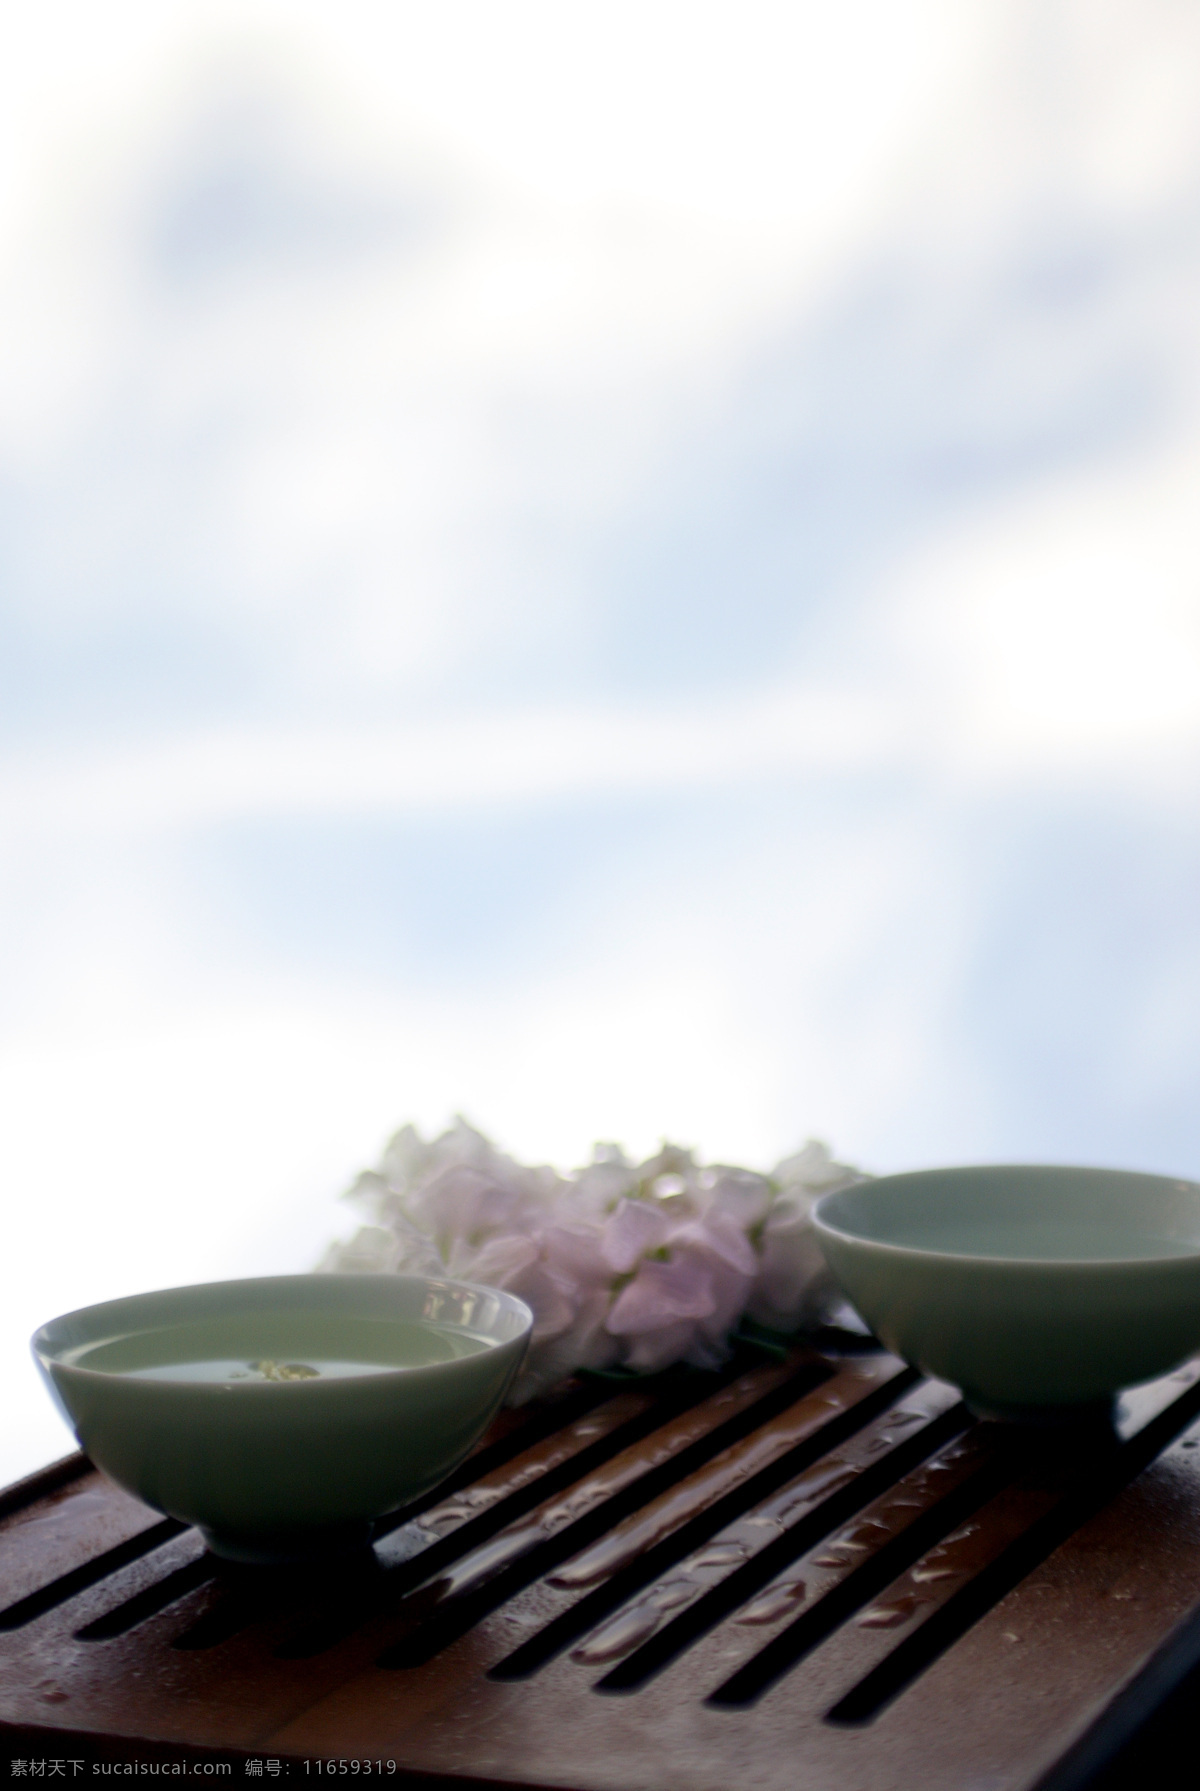 茶香 餐饮美食 茶 传统 摄影图库 文化 意境 饮料酒水 中国 水 psd源文件 餐饮素材